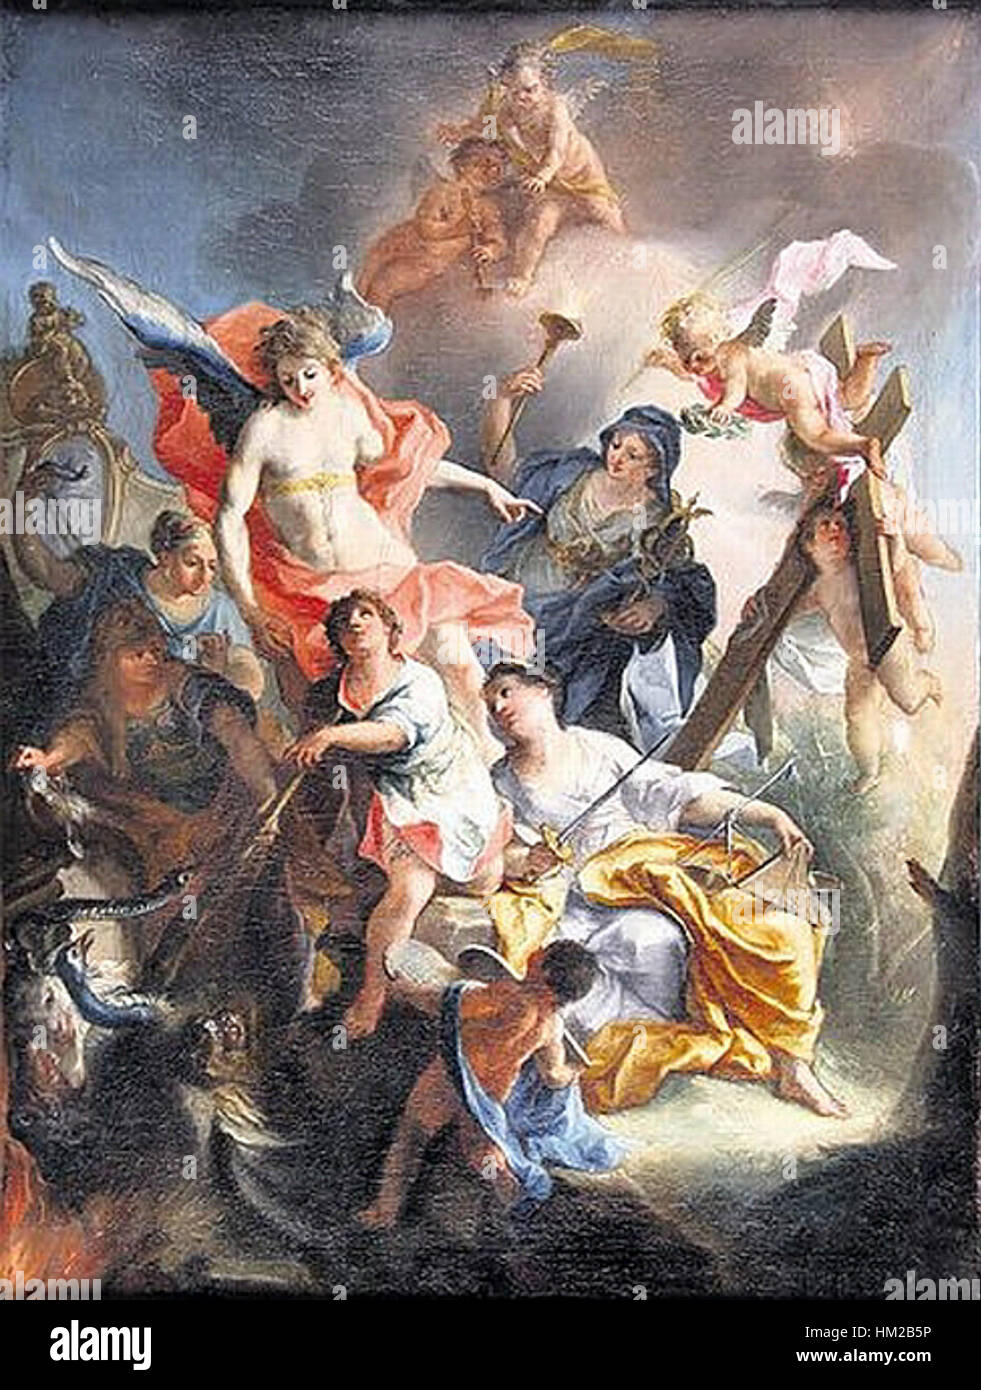 Holzer, Johann Evangelist - Der christliche Herkules - 1736 Stock Photo